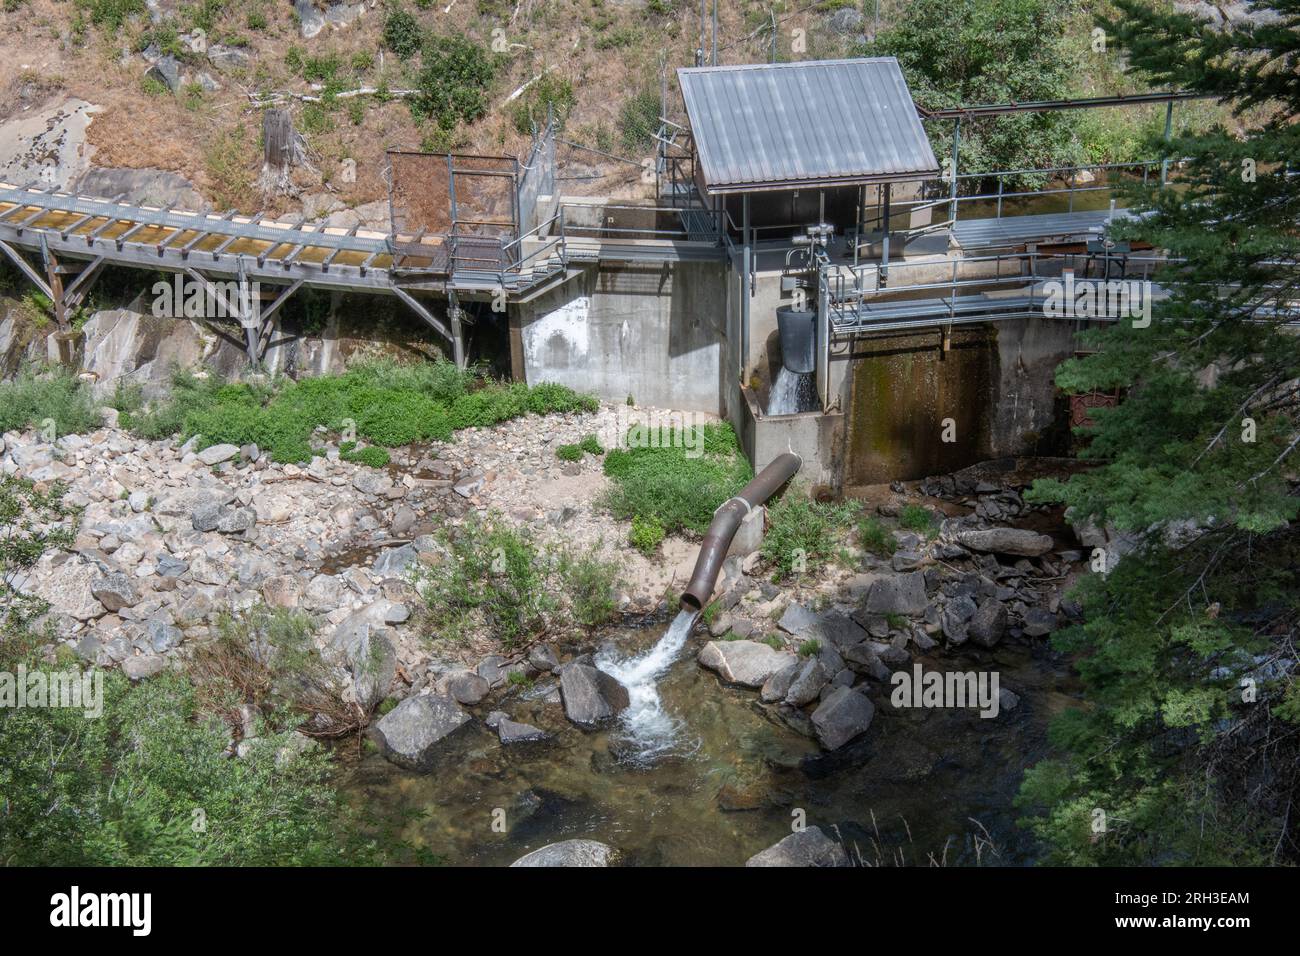 Spring Gap-Stanislaus Hydroelectric Project im Stanislaus River in den Bergen der Sierra Nevada in Kalifornien. Stockfoto